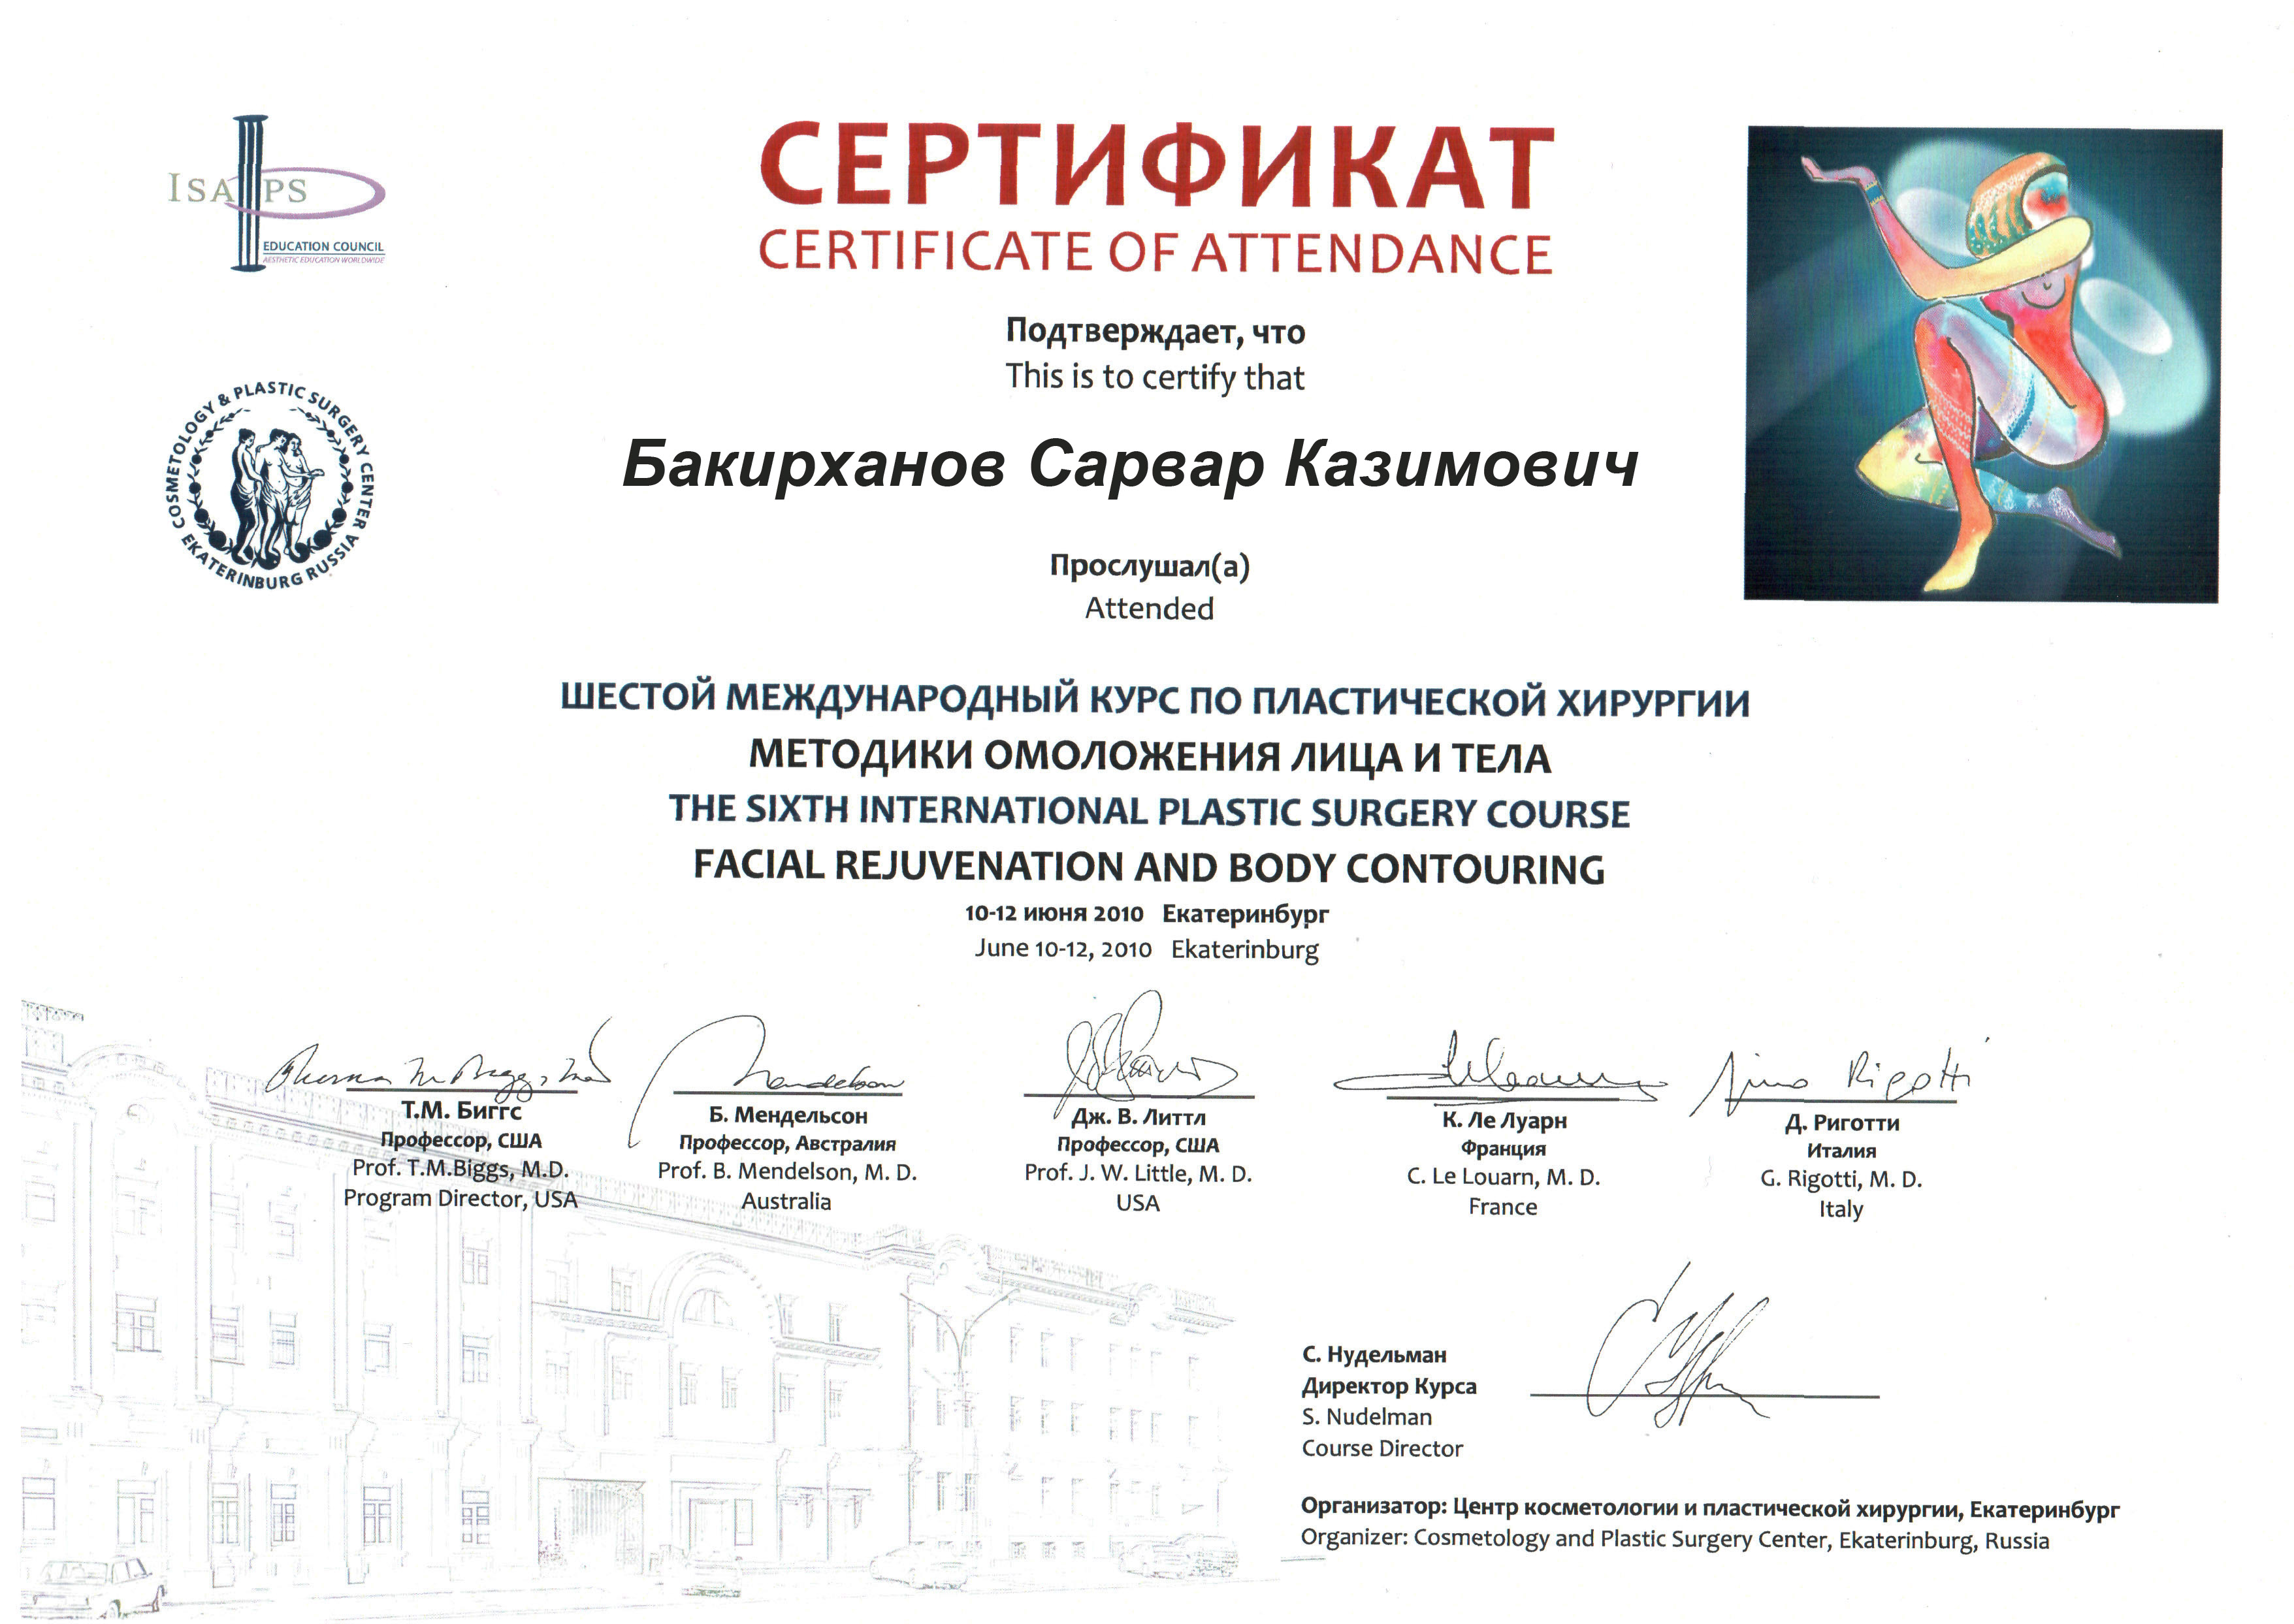 Сертификат 6 международного курса по пластической хирургии методики омоложения лица и тела